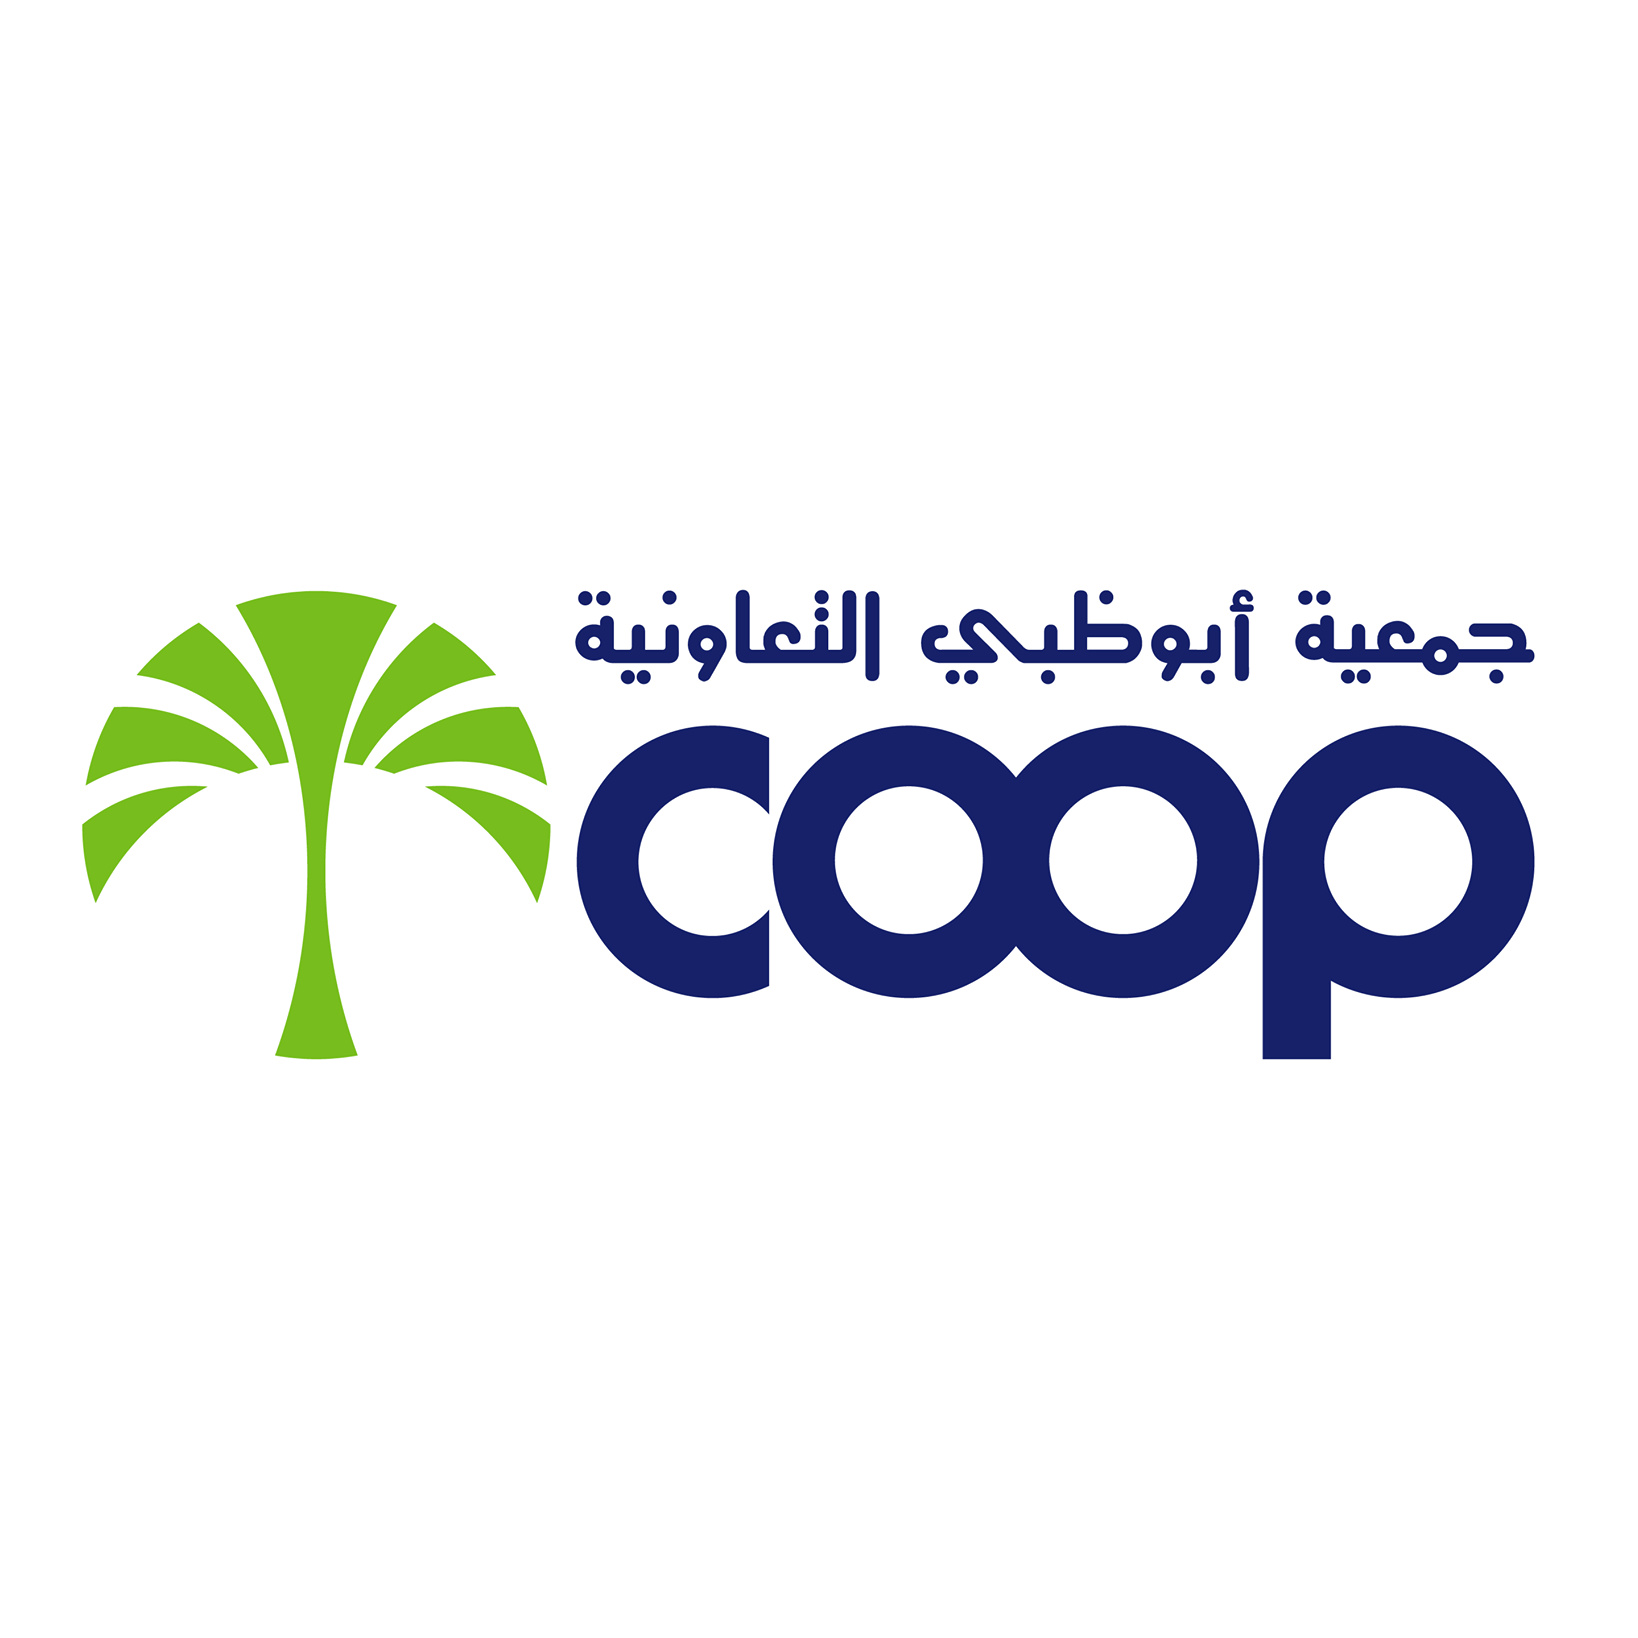 Abu Dhabi Coop